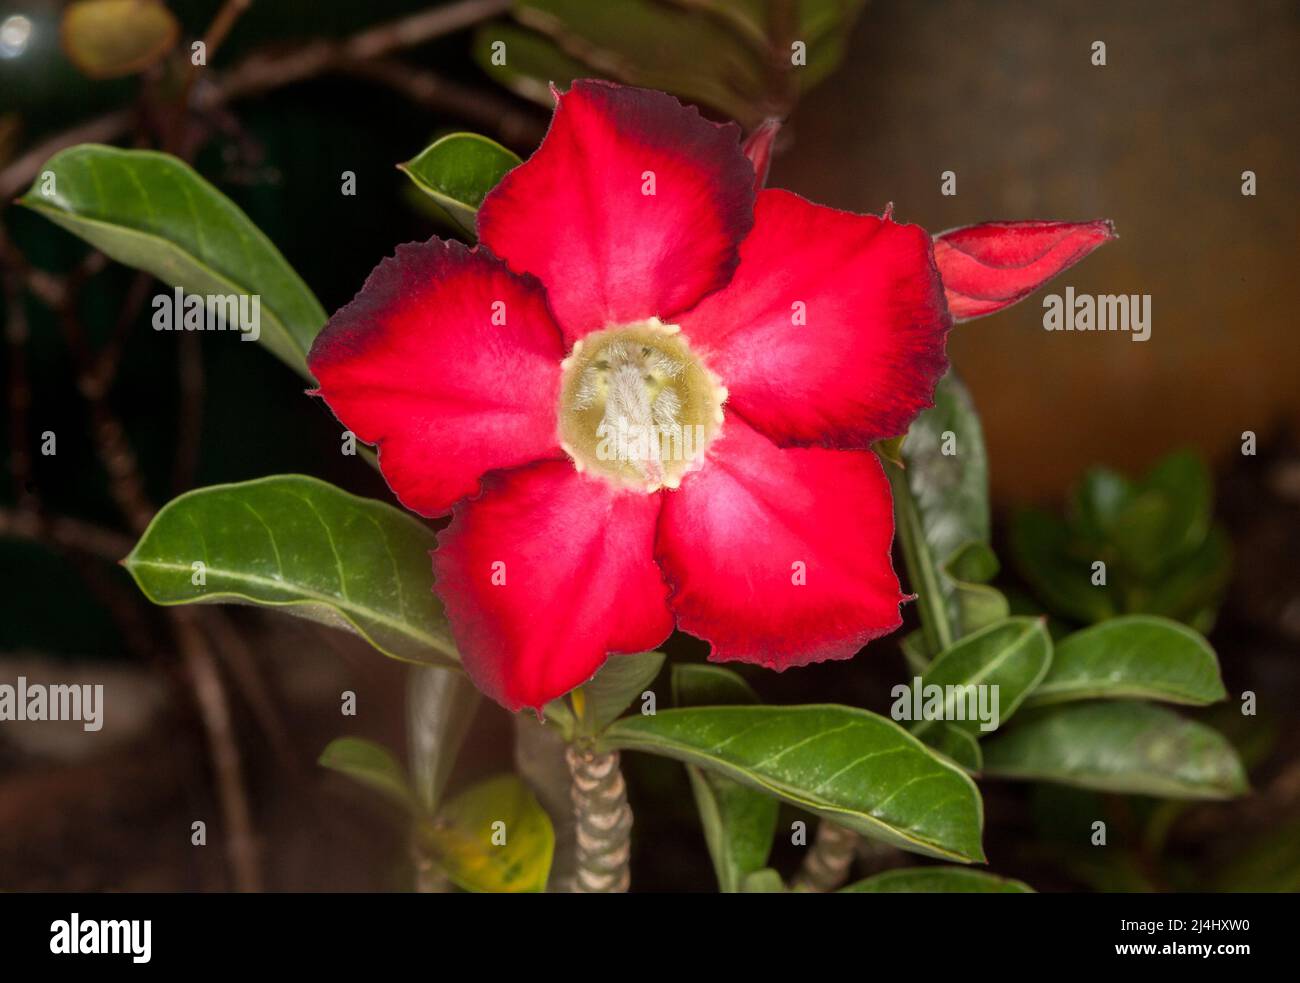 Superbe fleur rouge profond avec des pointes noires sur les pétales et les feuilles vert foncé de Desert Rose, Adenium obesum, une plante succulente tolérante à la sécheresse Banque D'Images